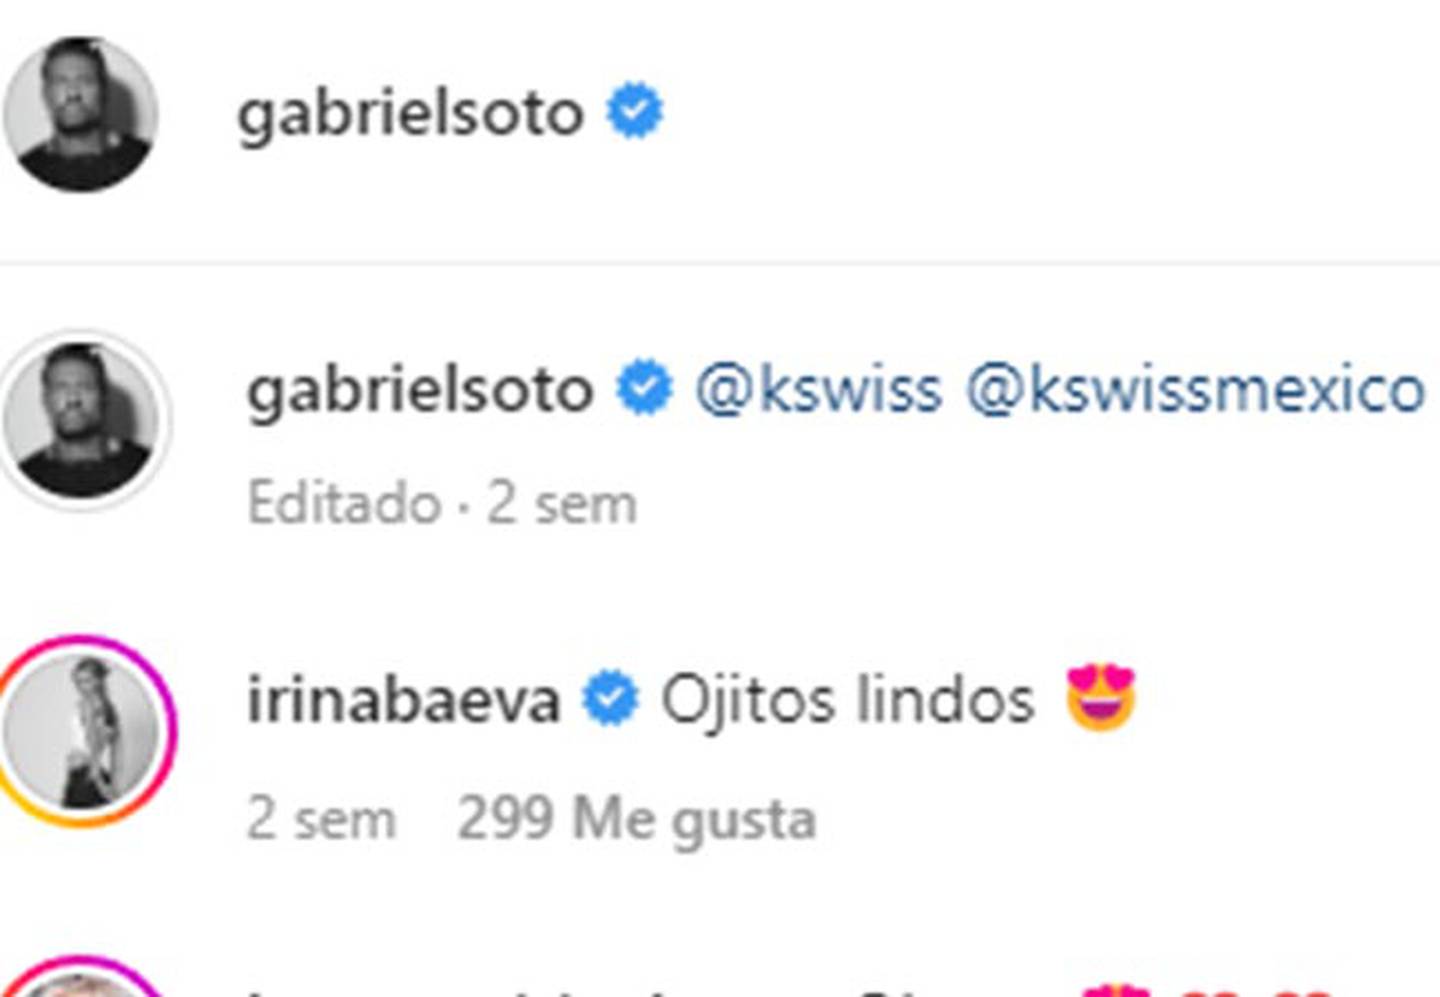 Las pruebas que evidencian que Gabriel Soto ya no ama a Irina Baeva